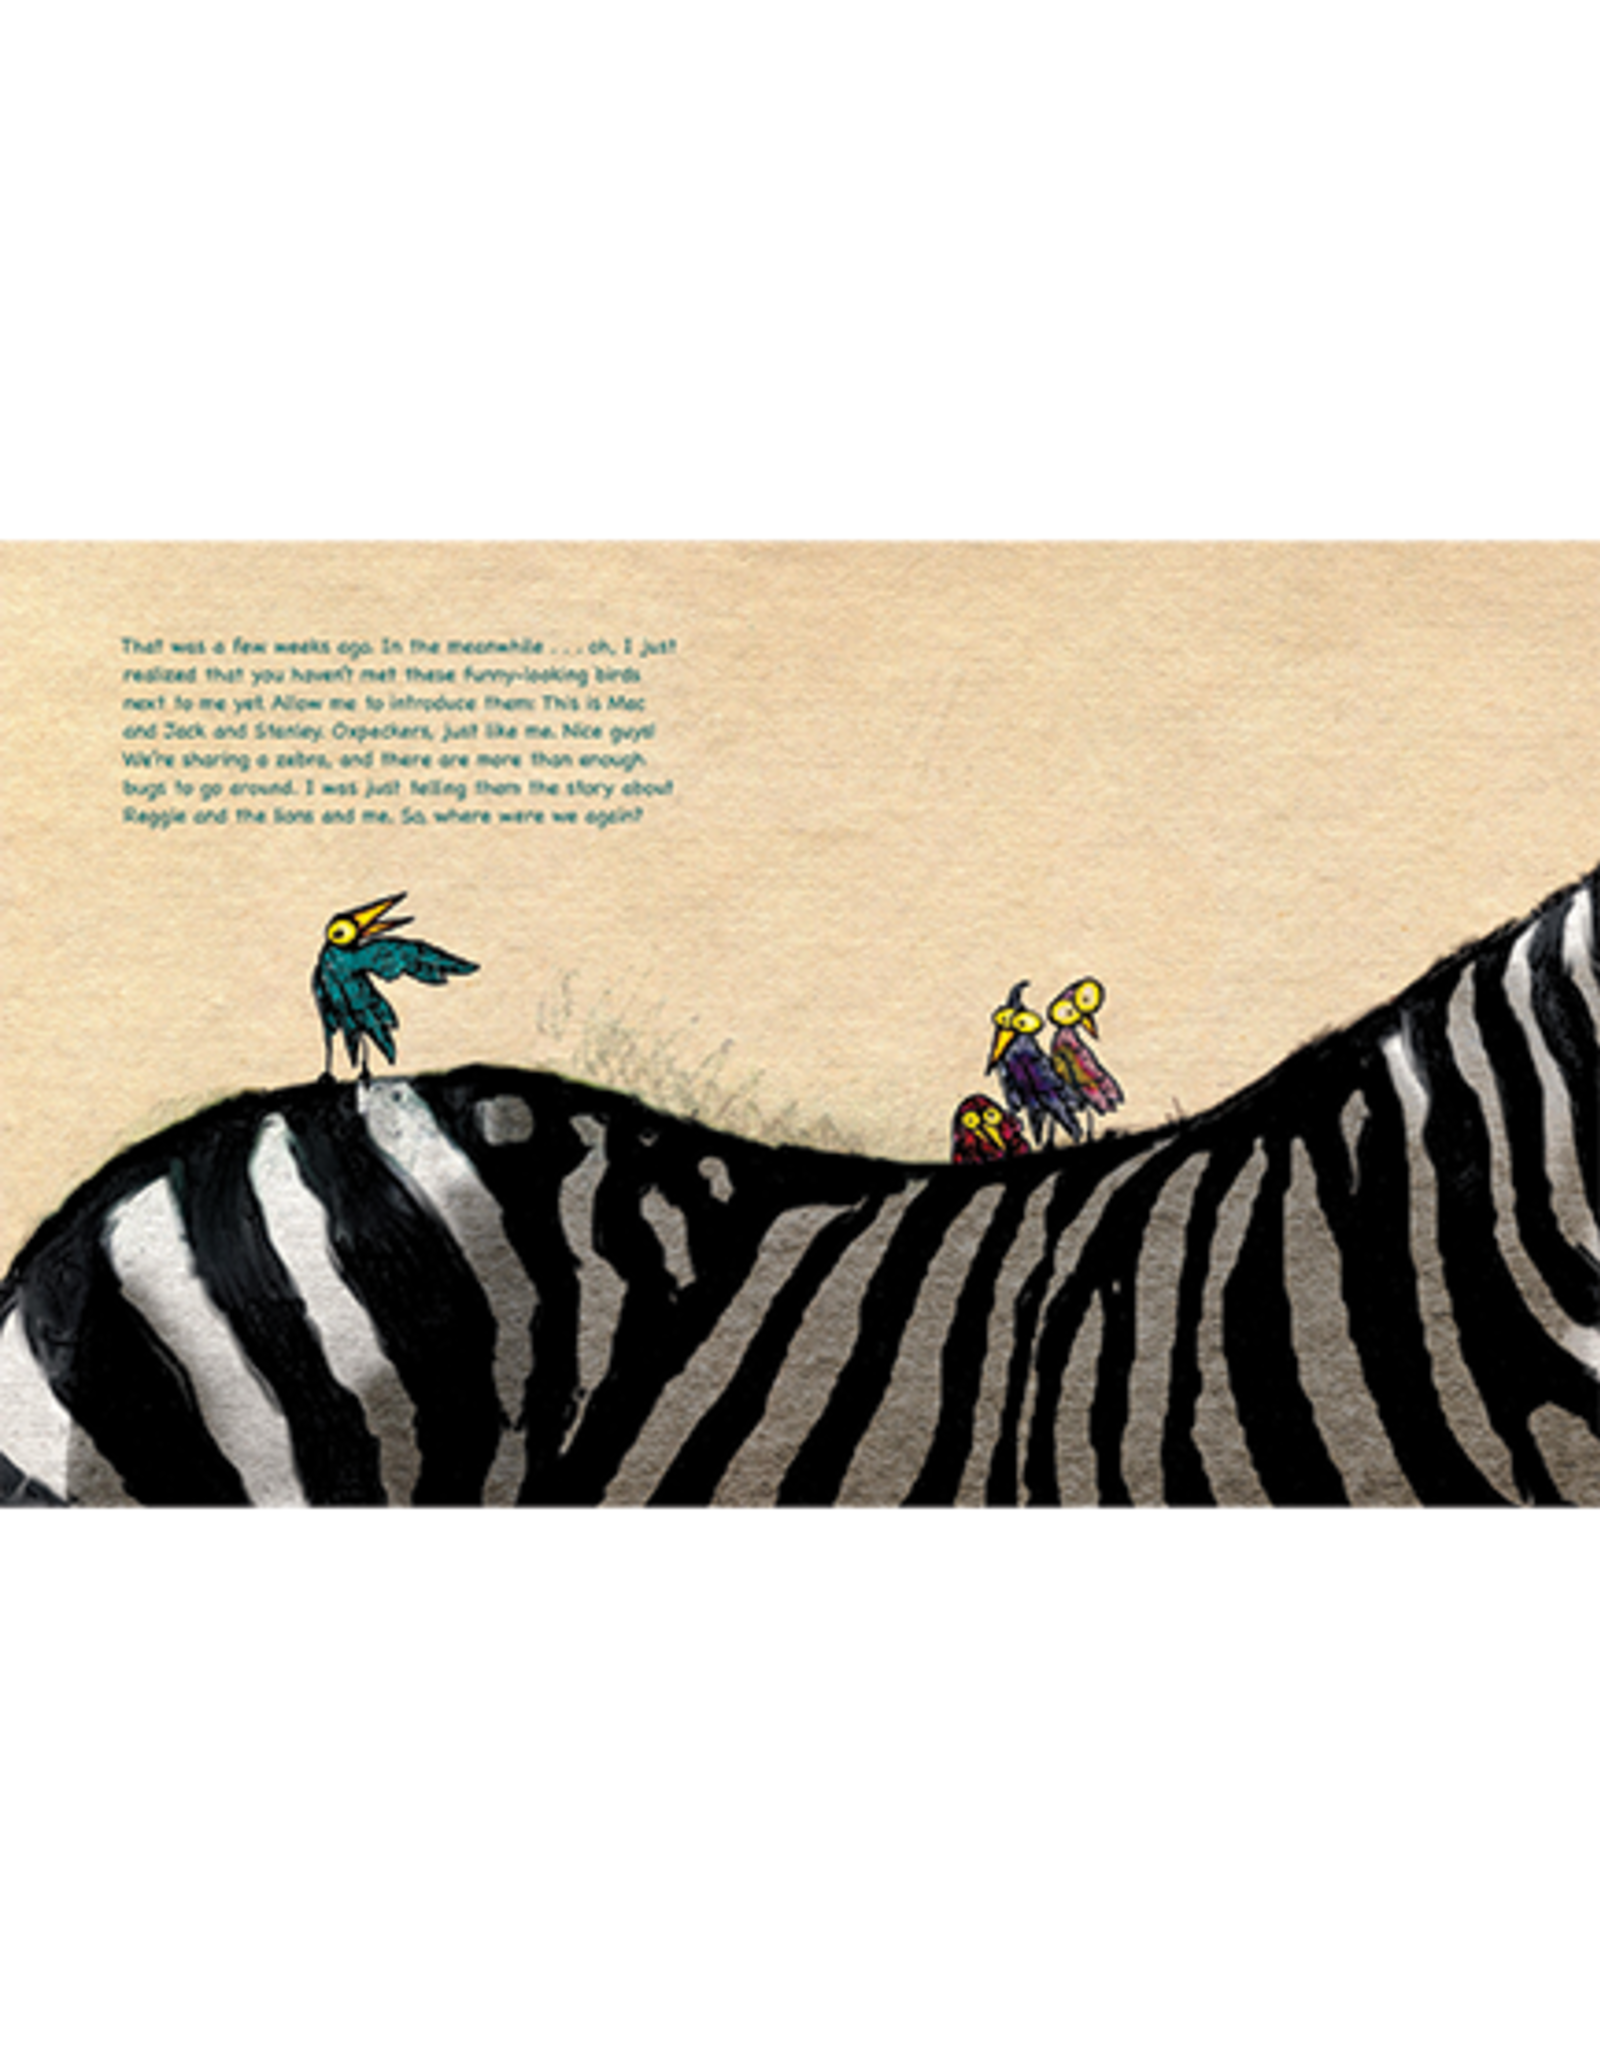 Reggie, My Rhinoceros: A gentle children’s book on grief